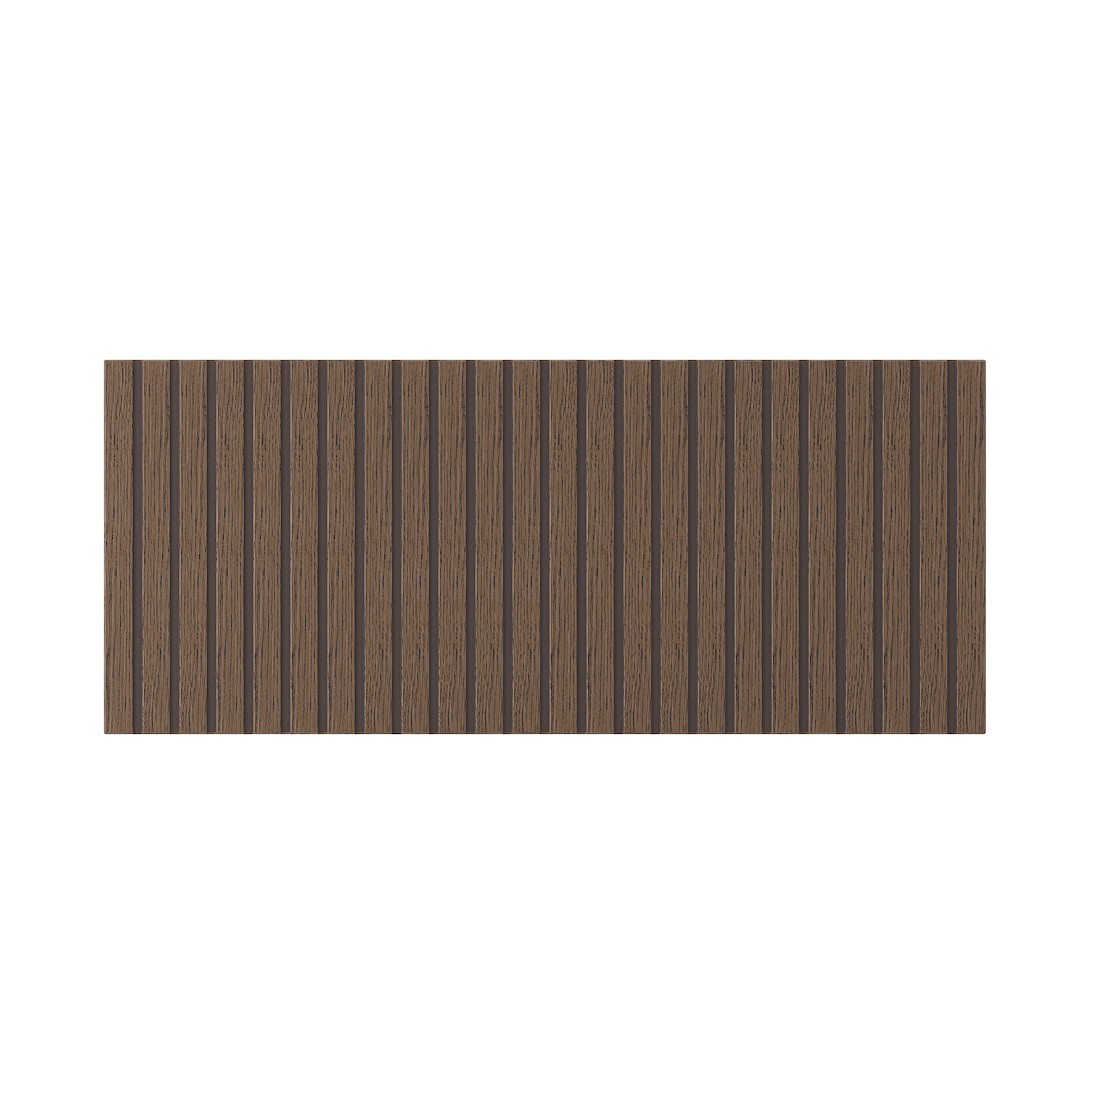 IKEA BJÖRKÖVIKEN БЬЁРКЁВИКЕН Фронтальная панель ящика, коричневый дубовый шпон, 60x26 см 50490954 | 504.909.54